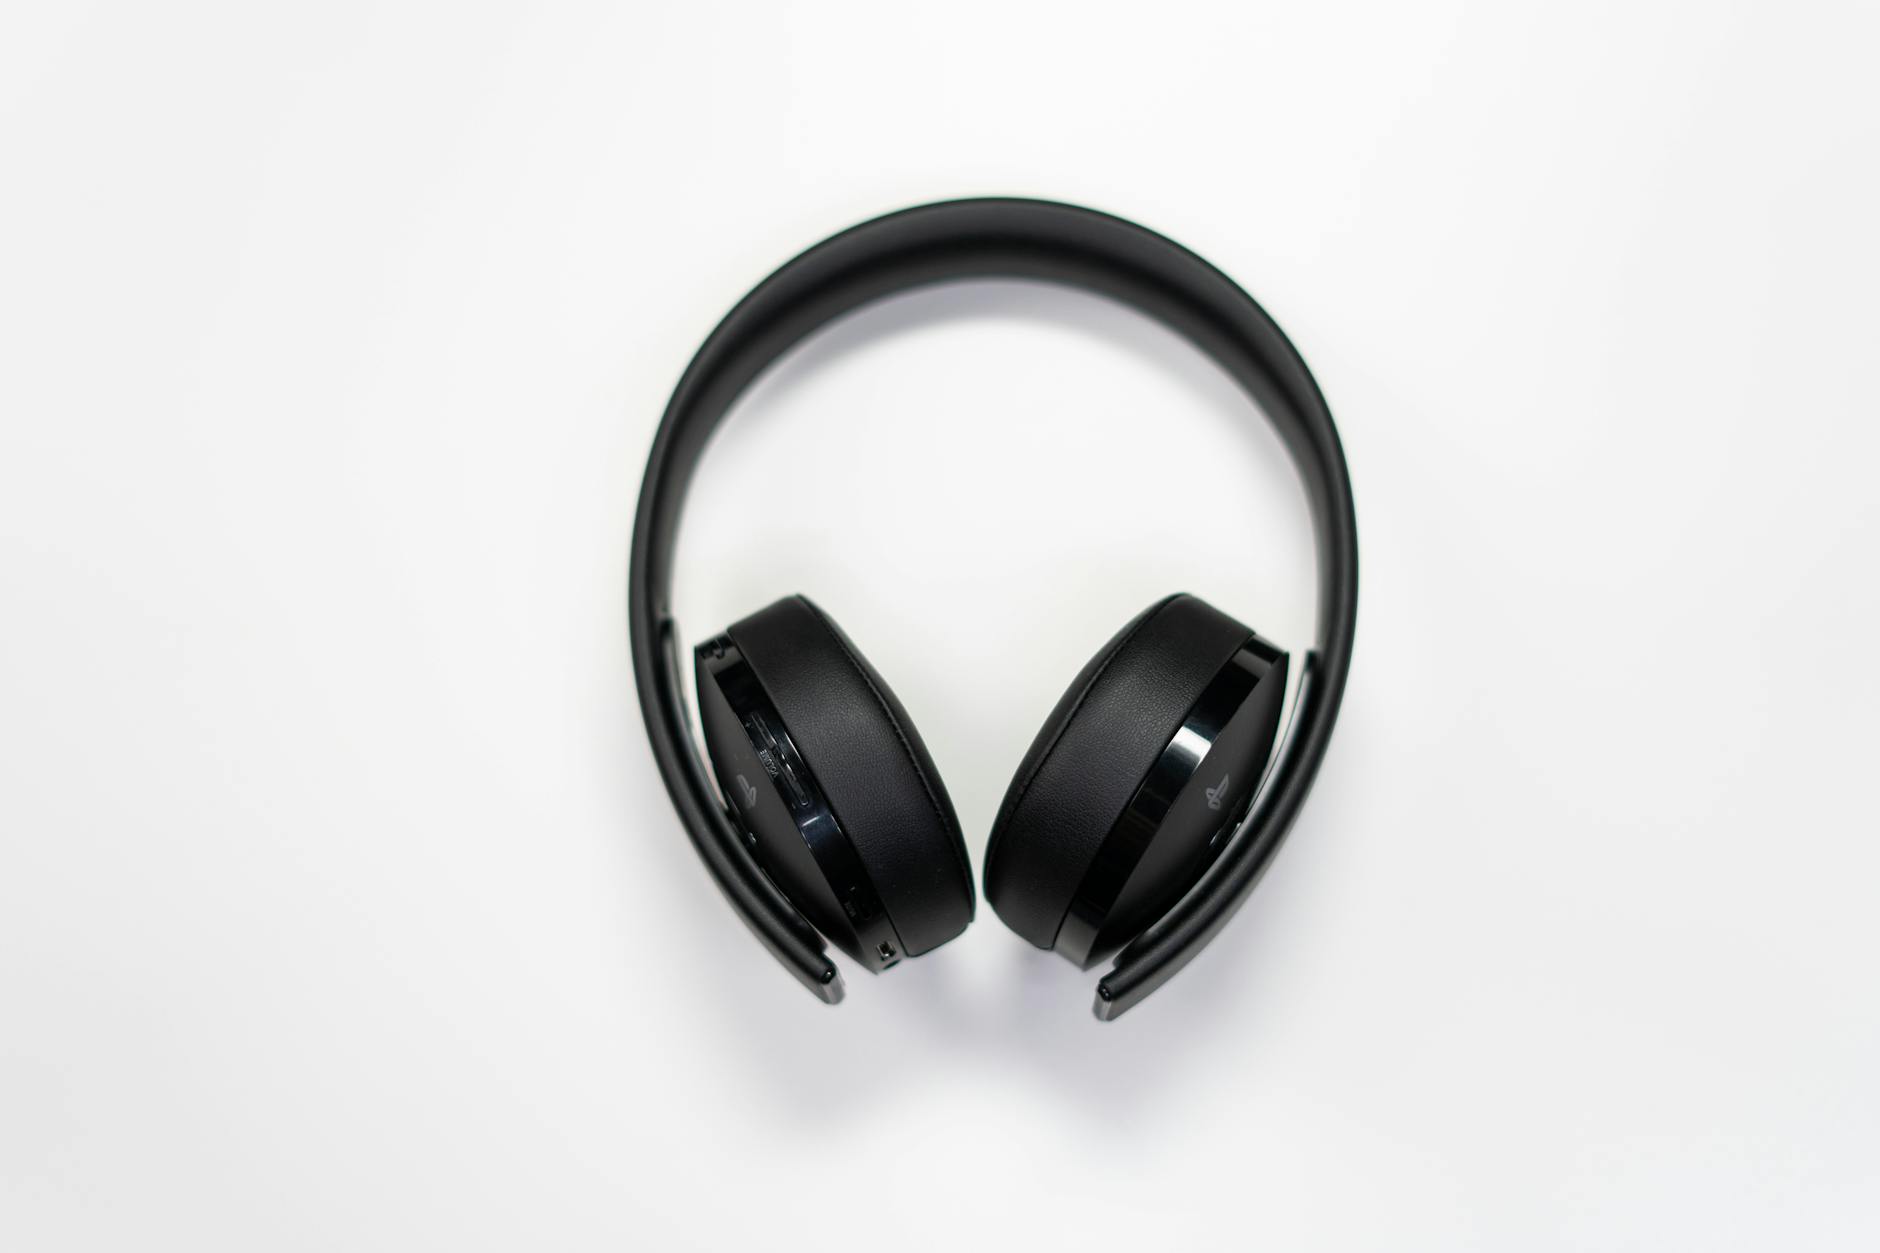 TWS earphones